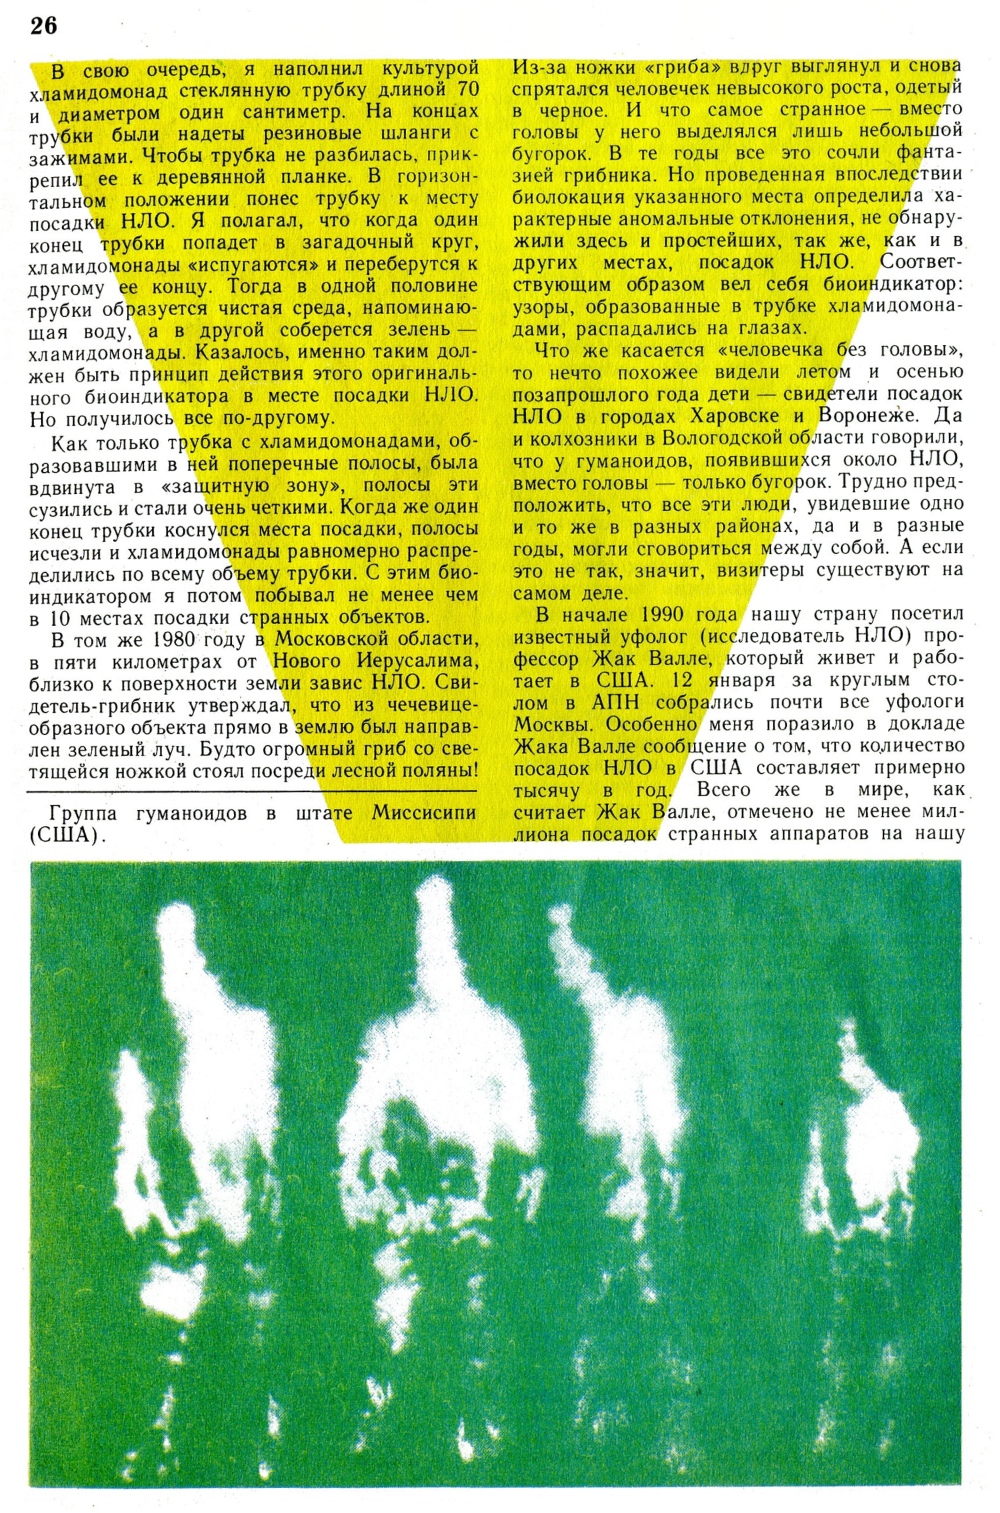 Пришельцы? Ю. Симаков. Юный натуралист, 1991, №1, с.25-27. Фотокопия №2